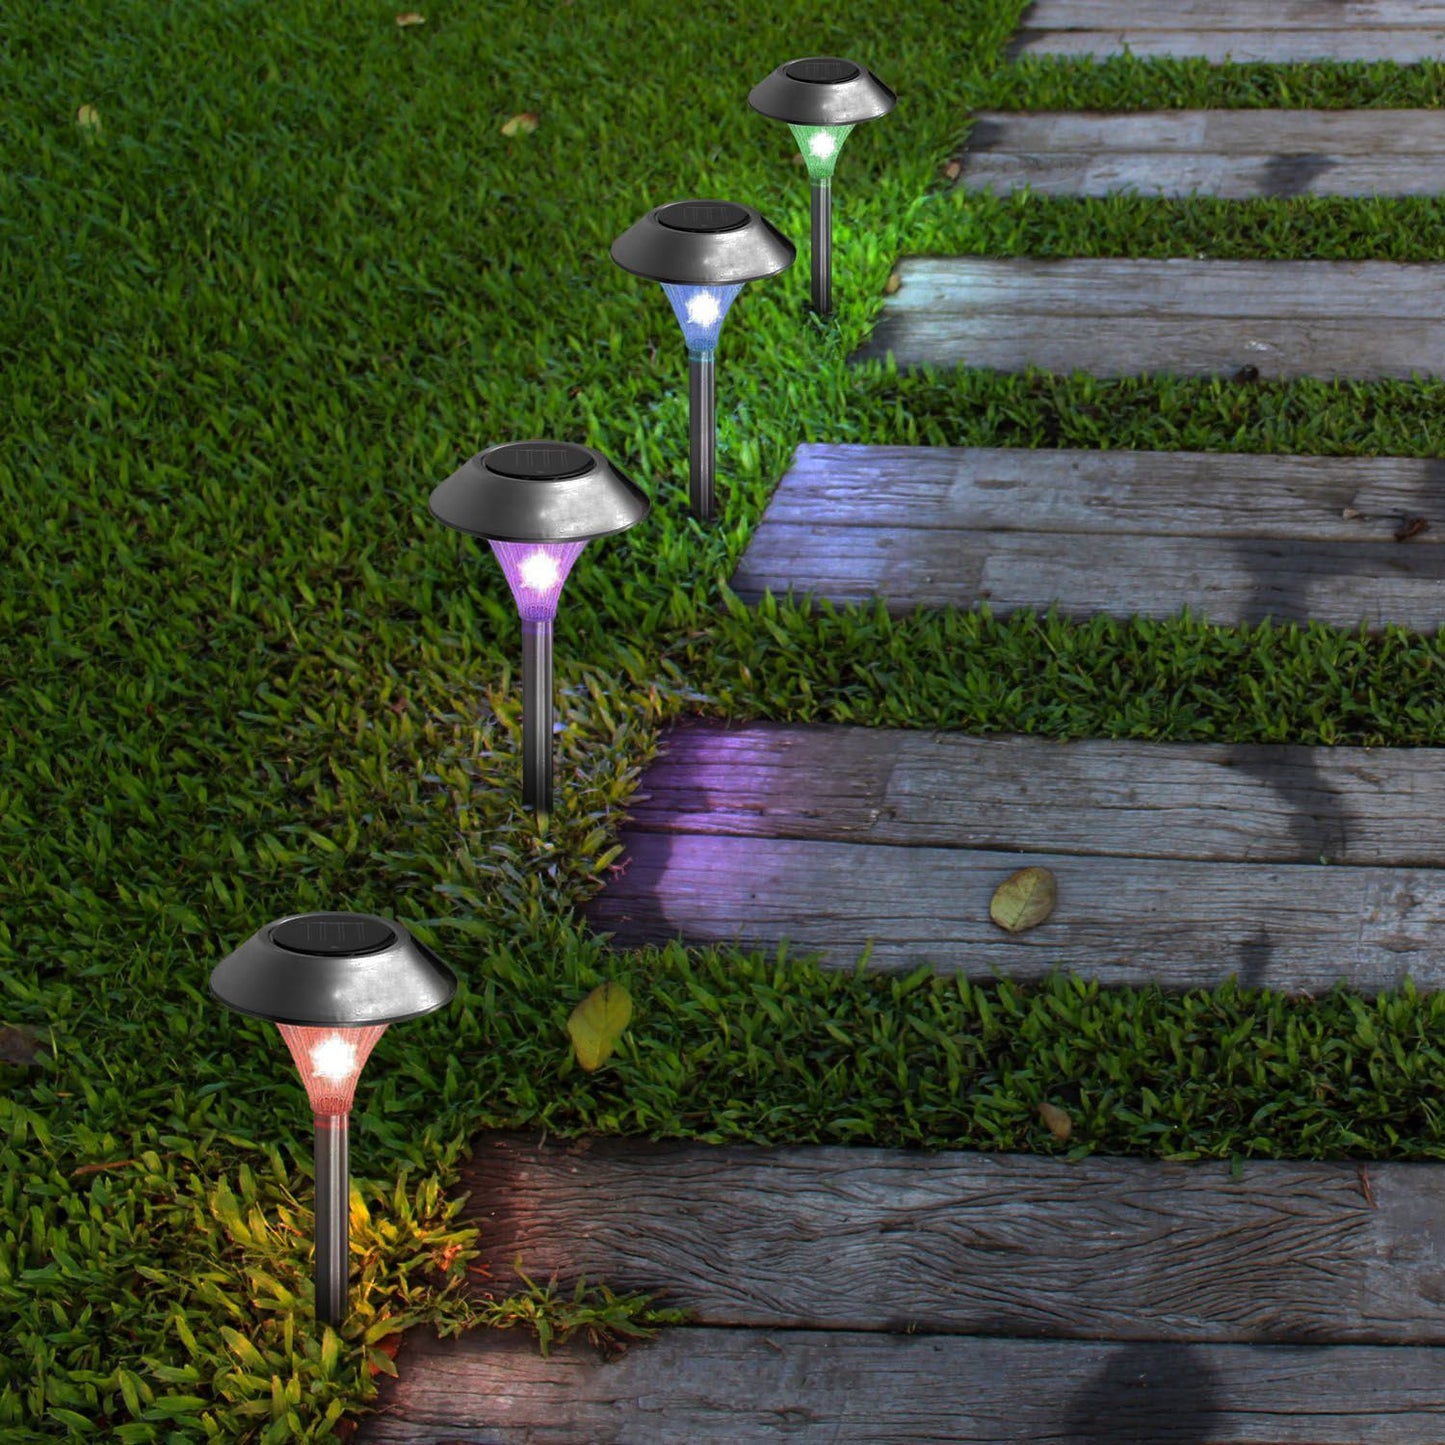 Waterproof Solar Pathway Lights Lamps